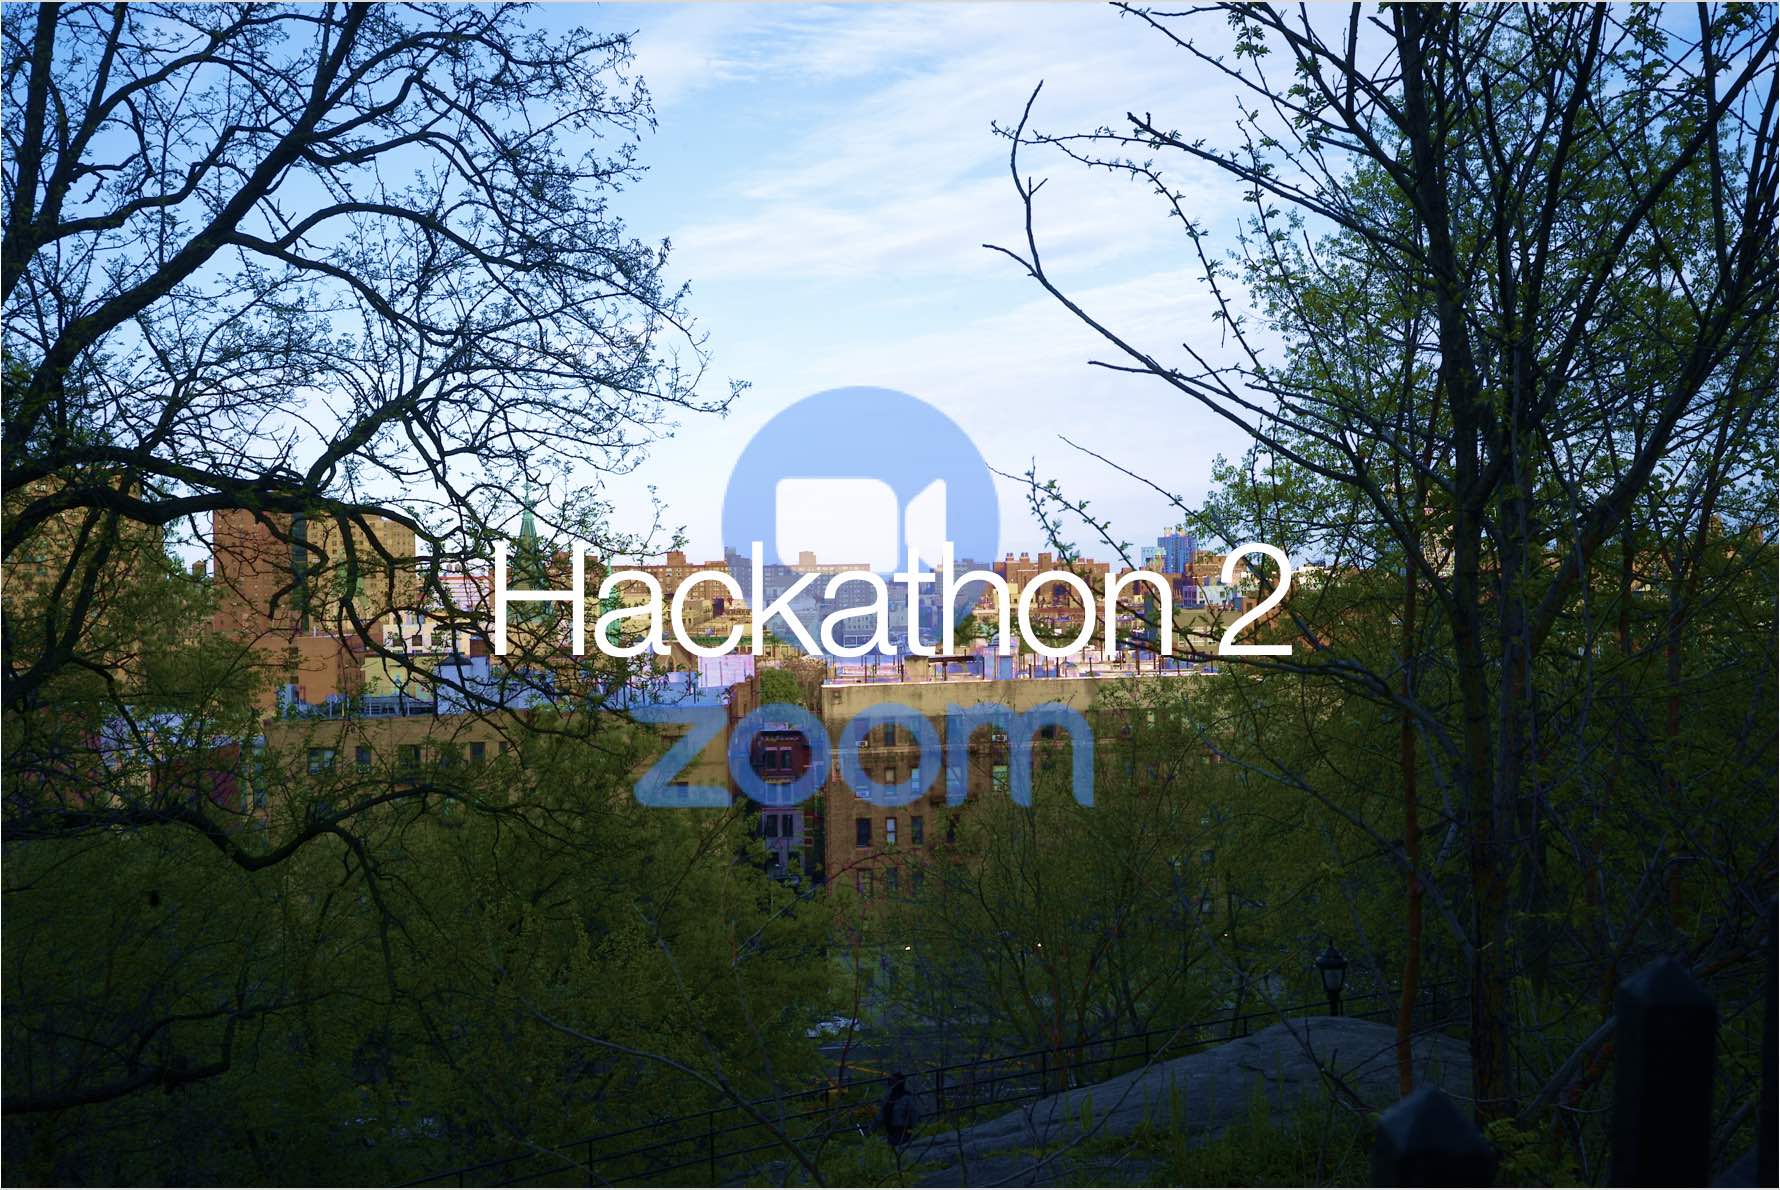 Hackathon 2